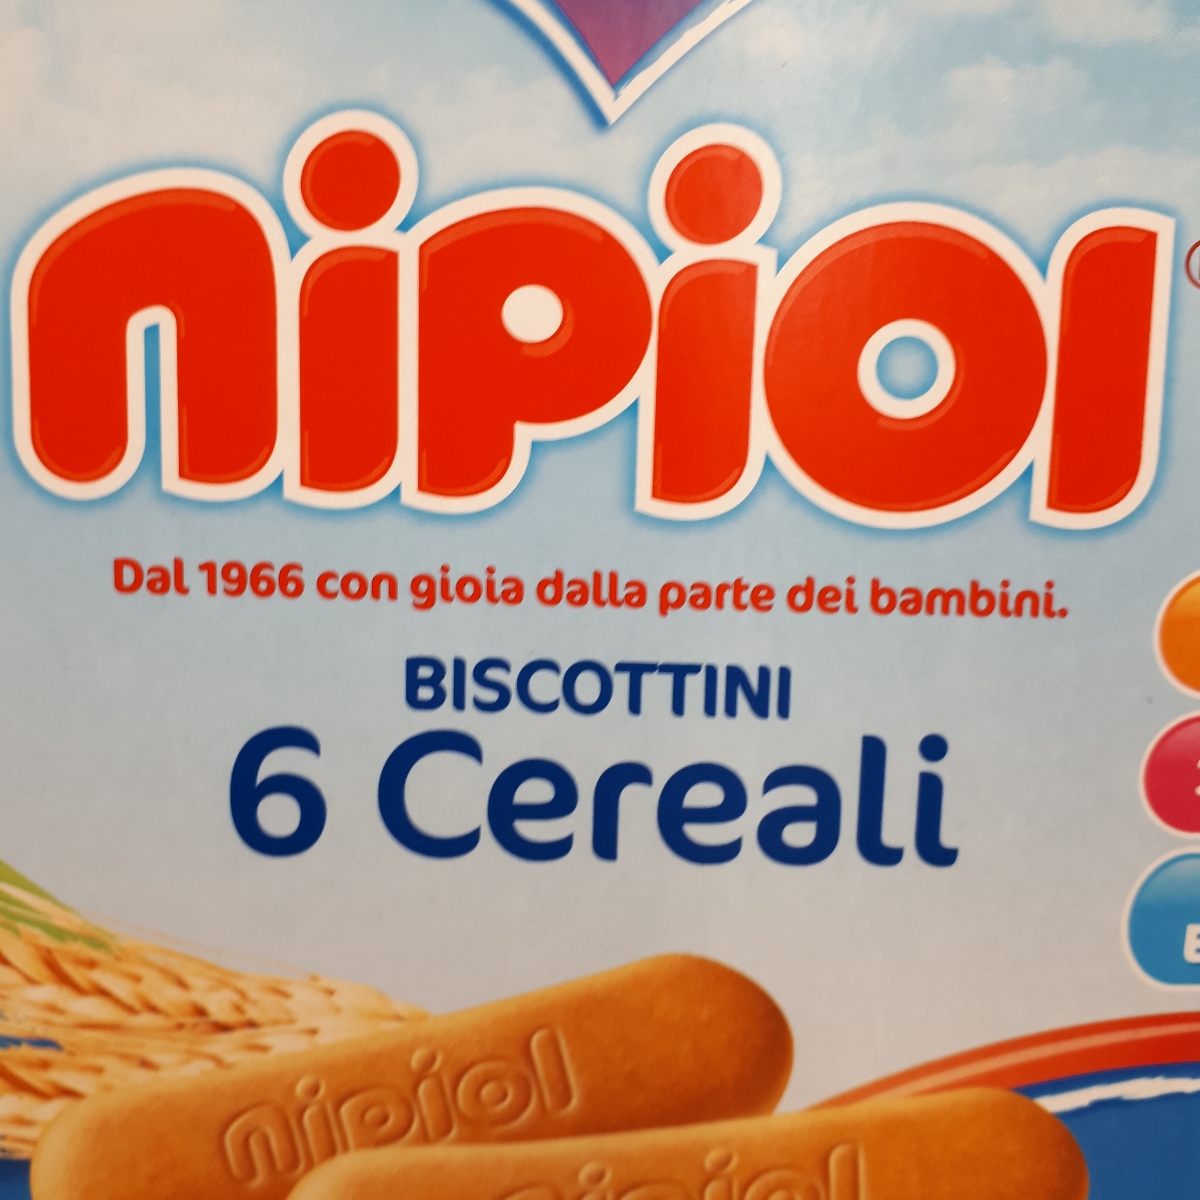 Nipiol Biscottini sei cereali Review